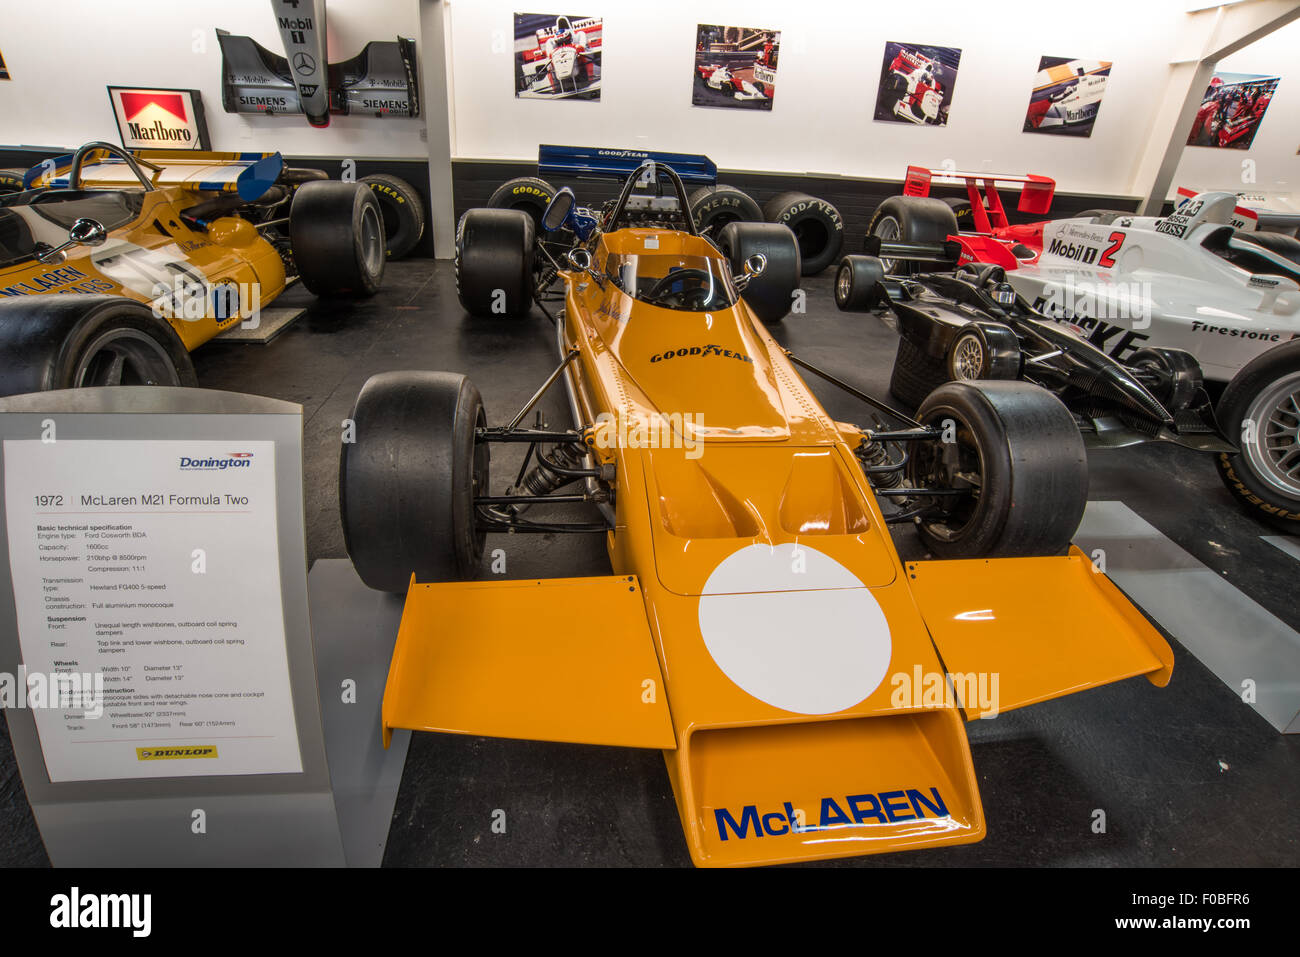 1972 Mclaren M21 voiture formule deux exposés au musée de Donington Park Raceway Leicestershire, Angleterre, Royaume-Uni Banque D'Images